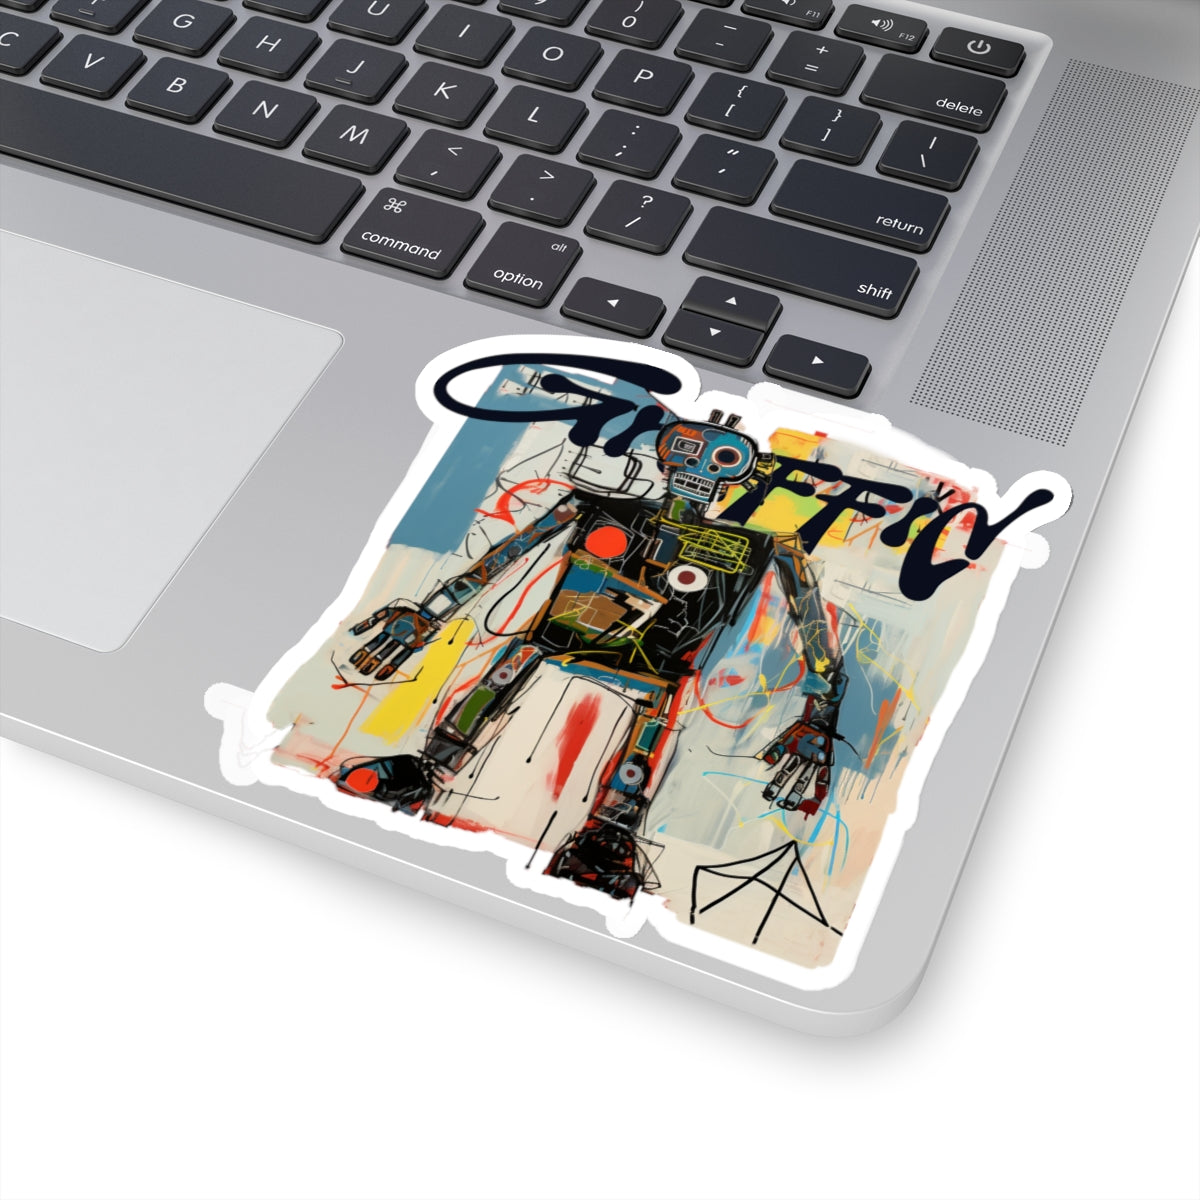 Graffid Robot Revolution Sticker